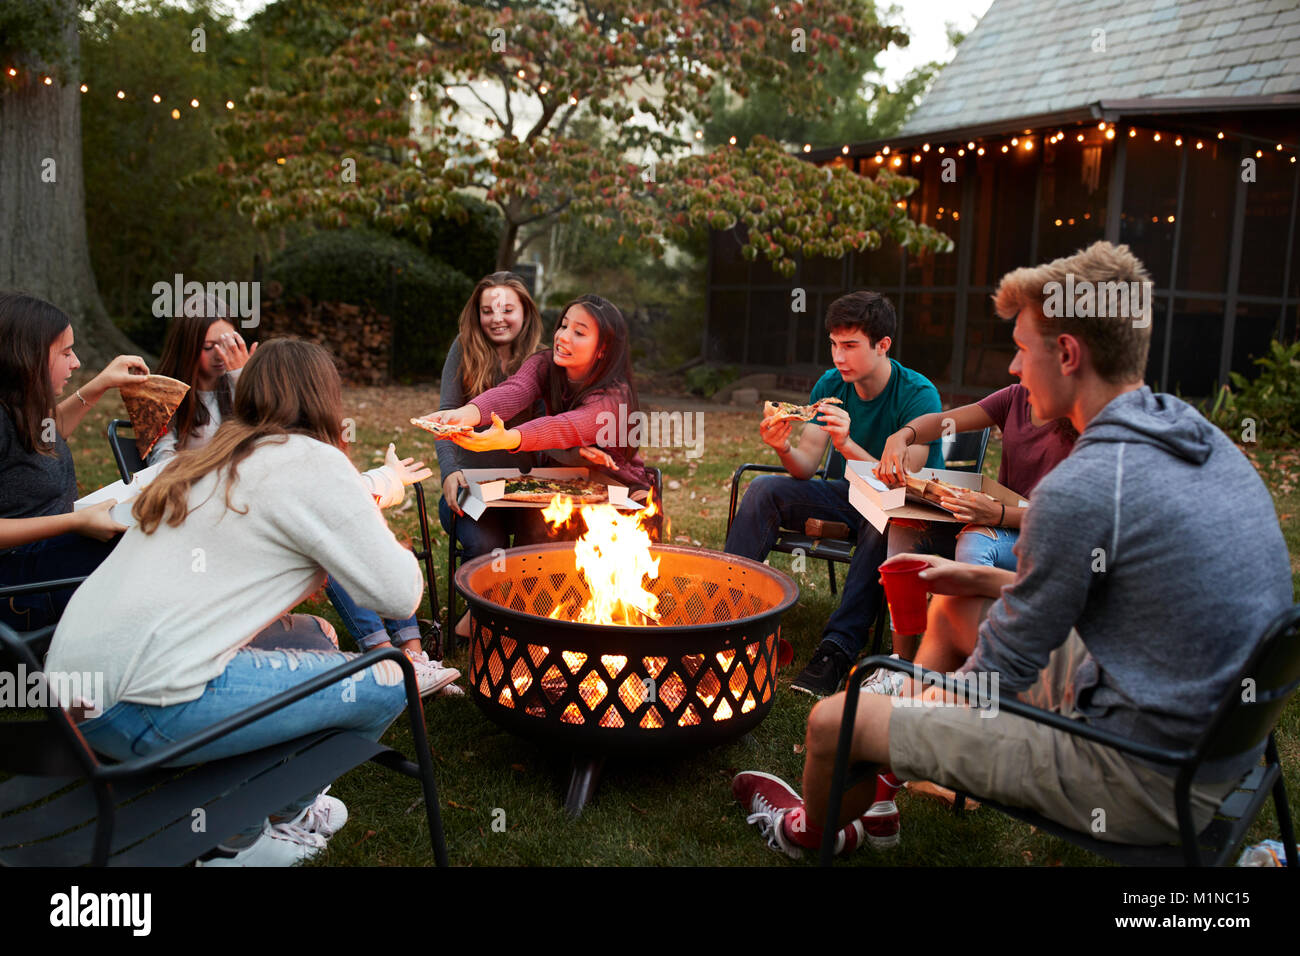 Amici di adolescenti sedersi attorno a una buca per il fuoco mangiare take-away pizza Foto Stock